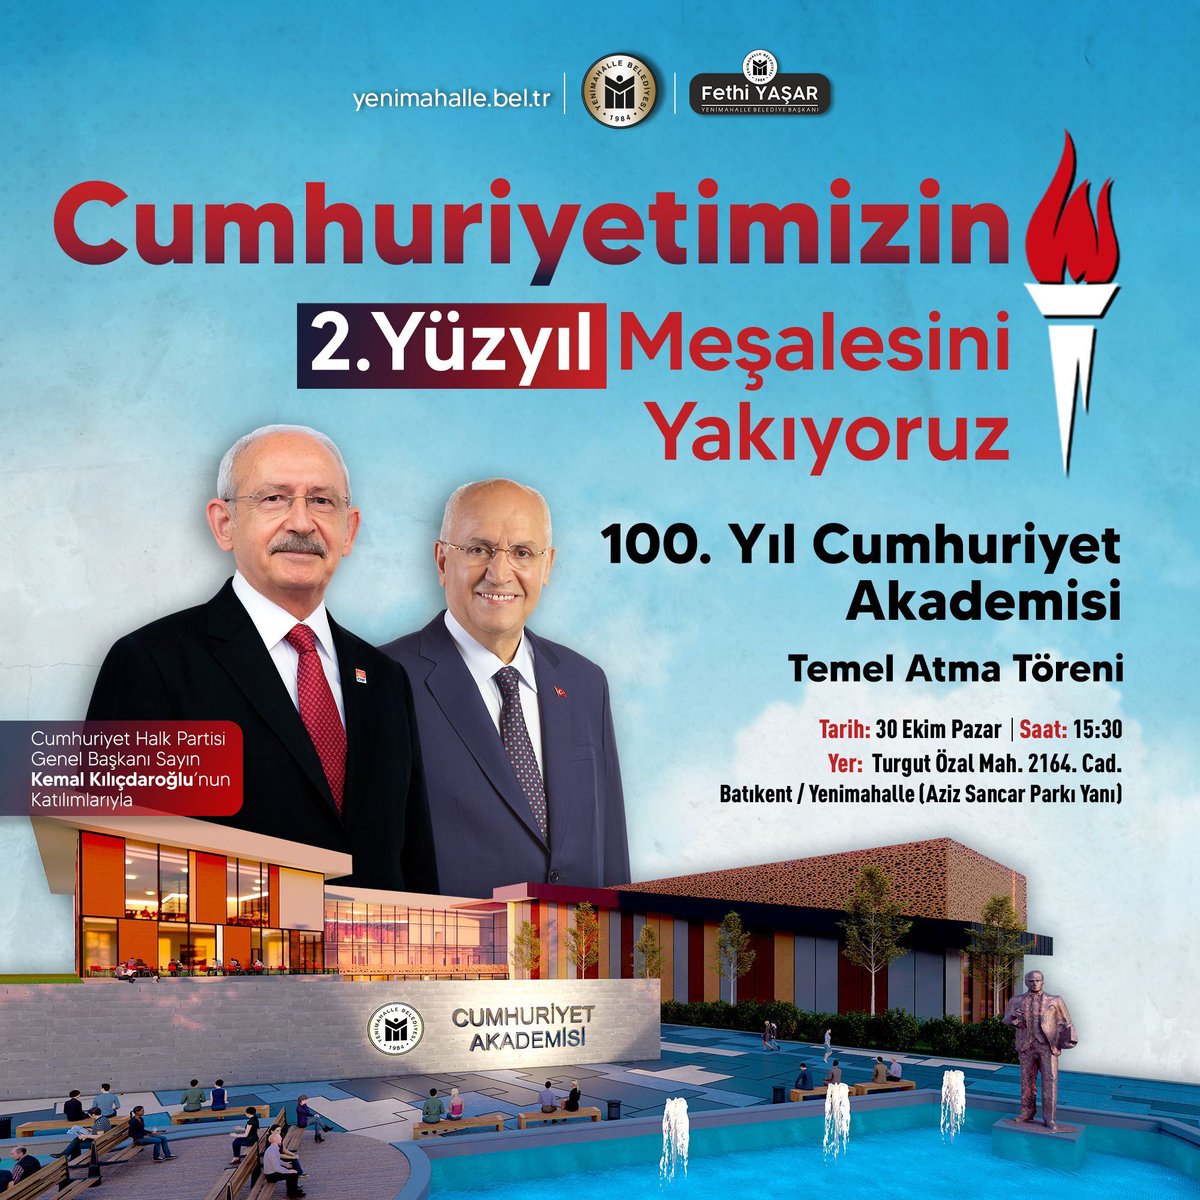 Genel Başkanımız Sayın Kemal Kılıçdaroğlu'nun da katılımıyla, bu pazar Ankara Batıkent'te Yenimahalle Belediyemizce inşa edilen 100. Yıl Cumhuriyet Akademisi'nin temel atma töreni yapılacak. Tüm halkımız davetlidir. #MeşaleleriYakıyoruz